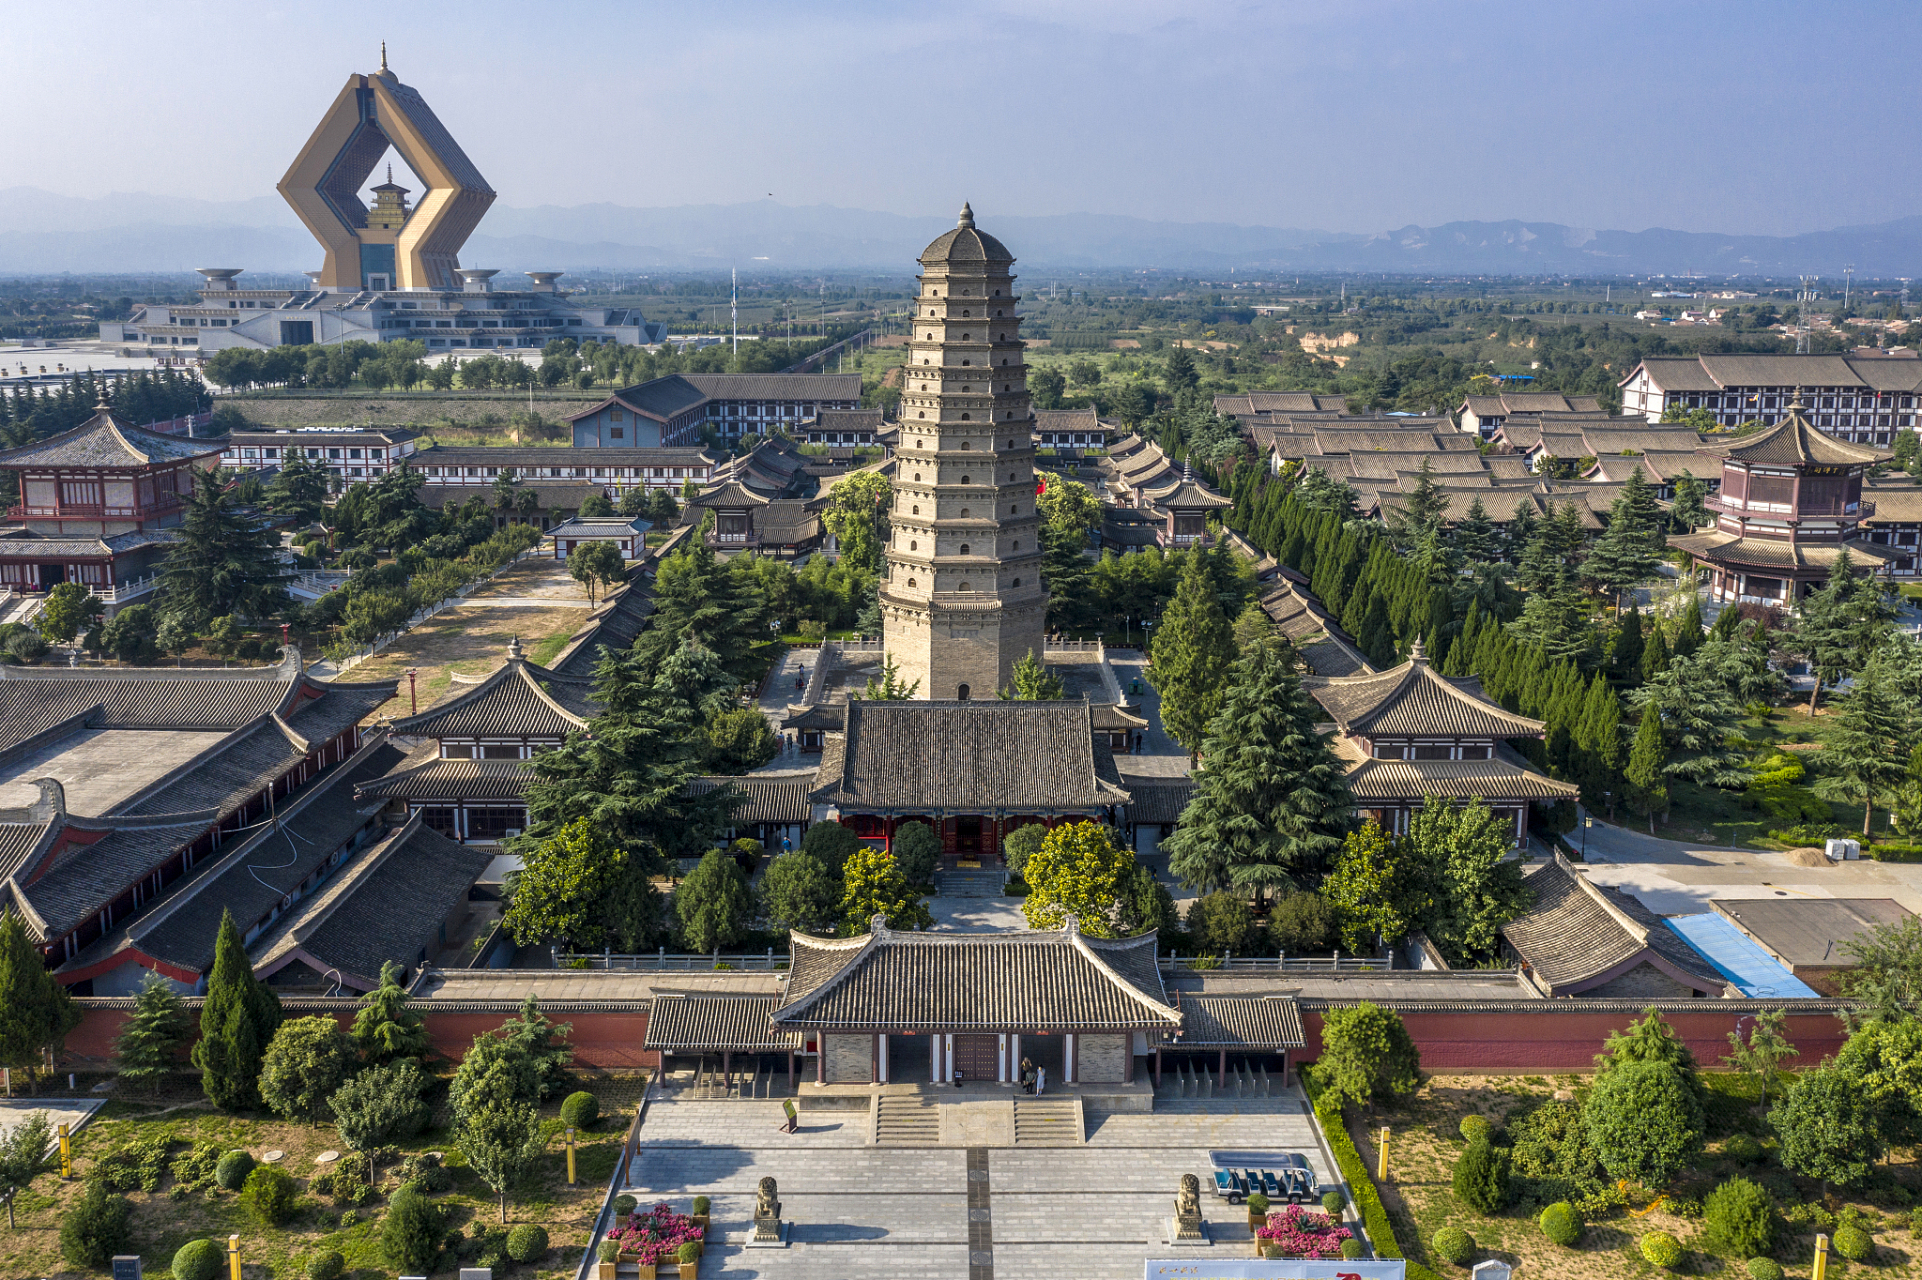 法门寺,位于陕西省宝鸡市扶风县法门镇,是中国佛教四大名刹之一,已有